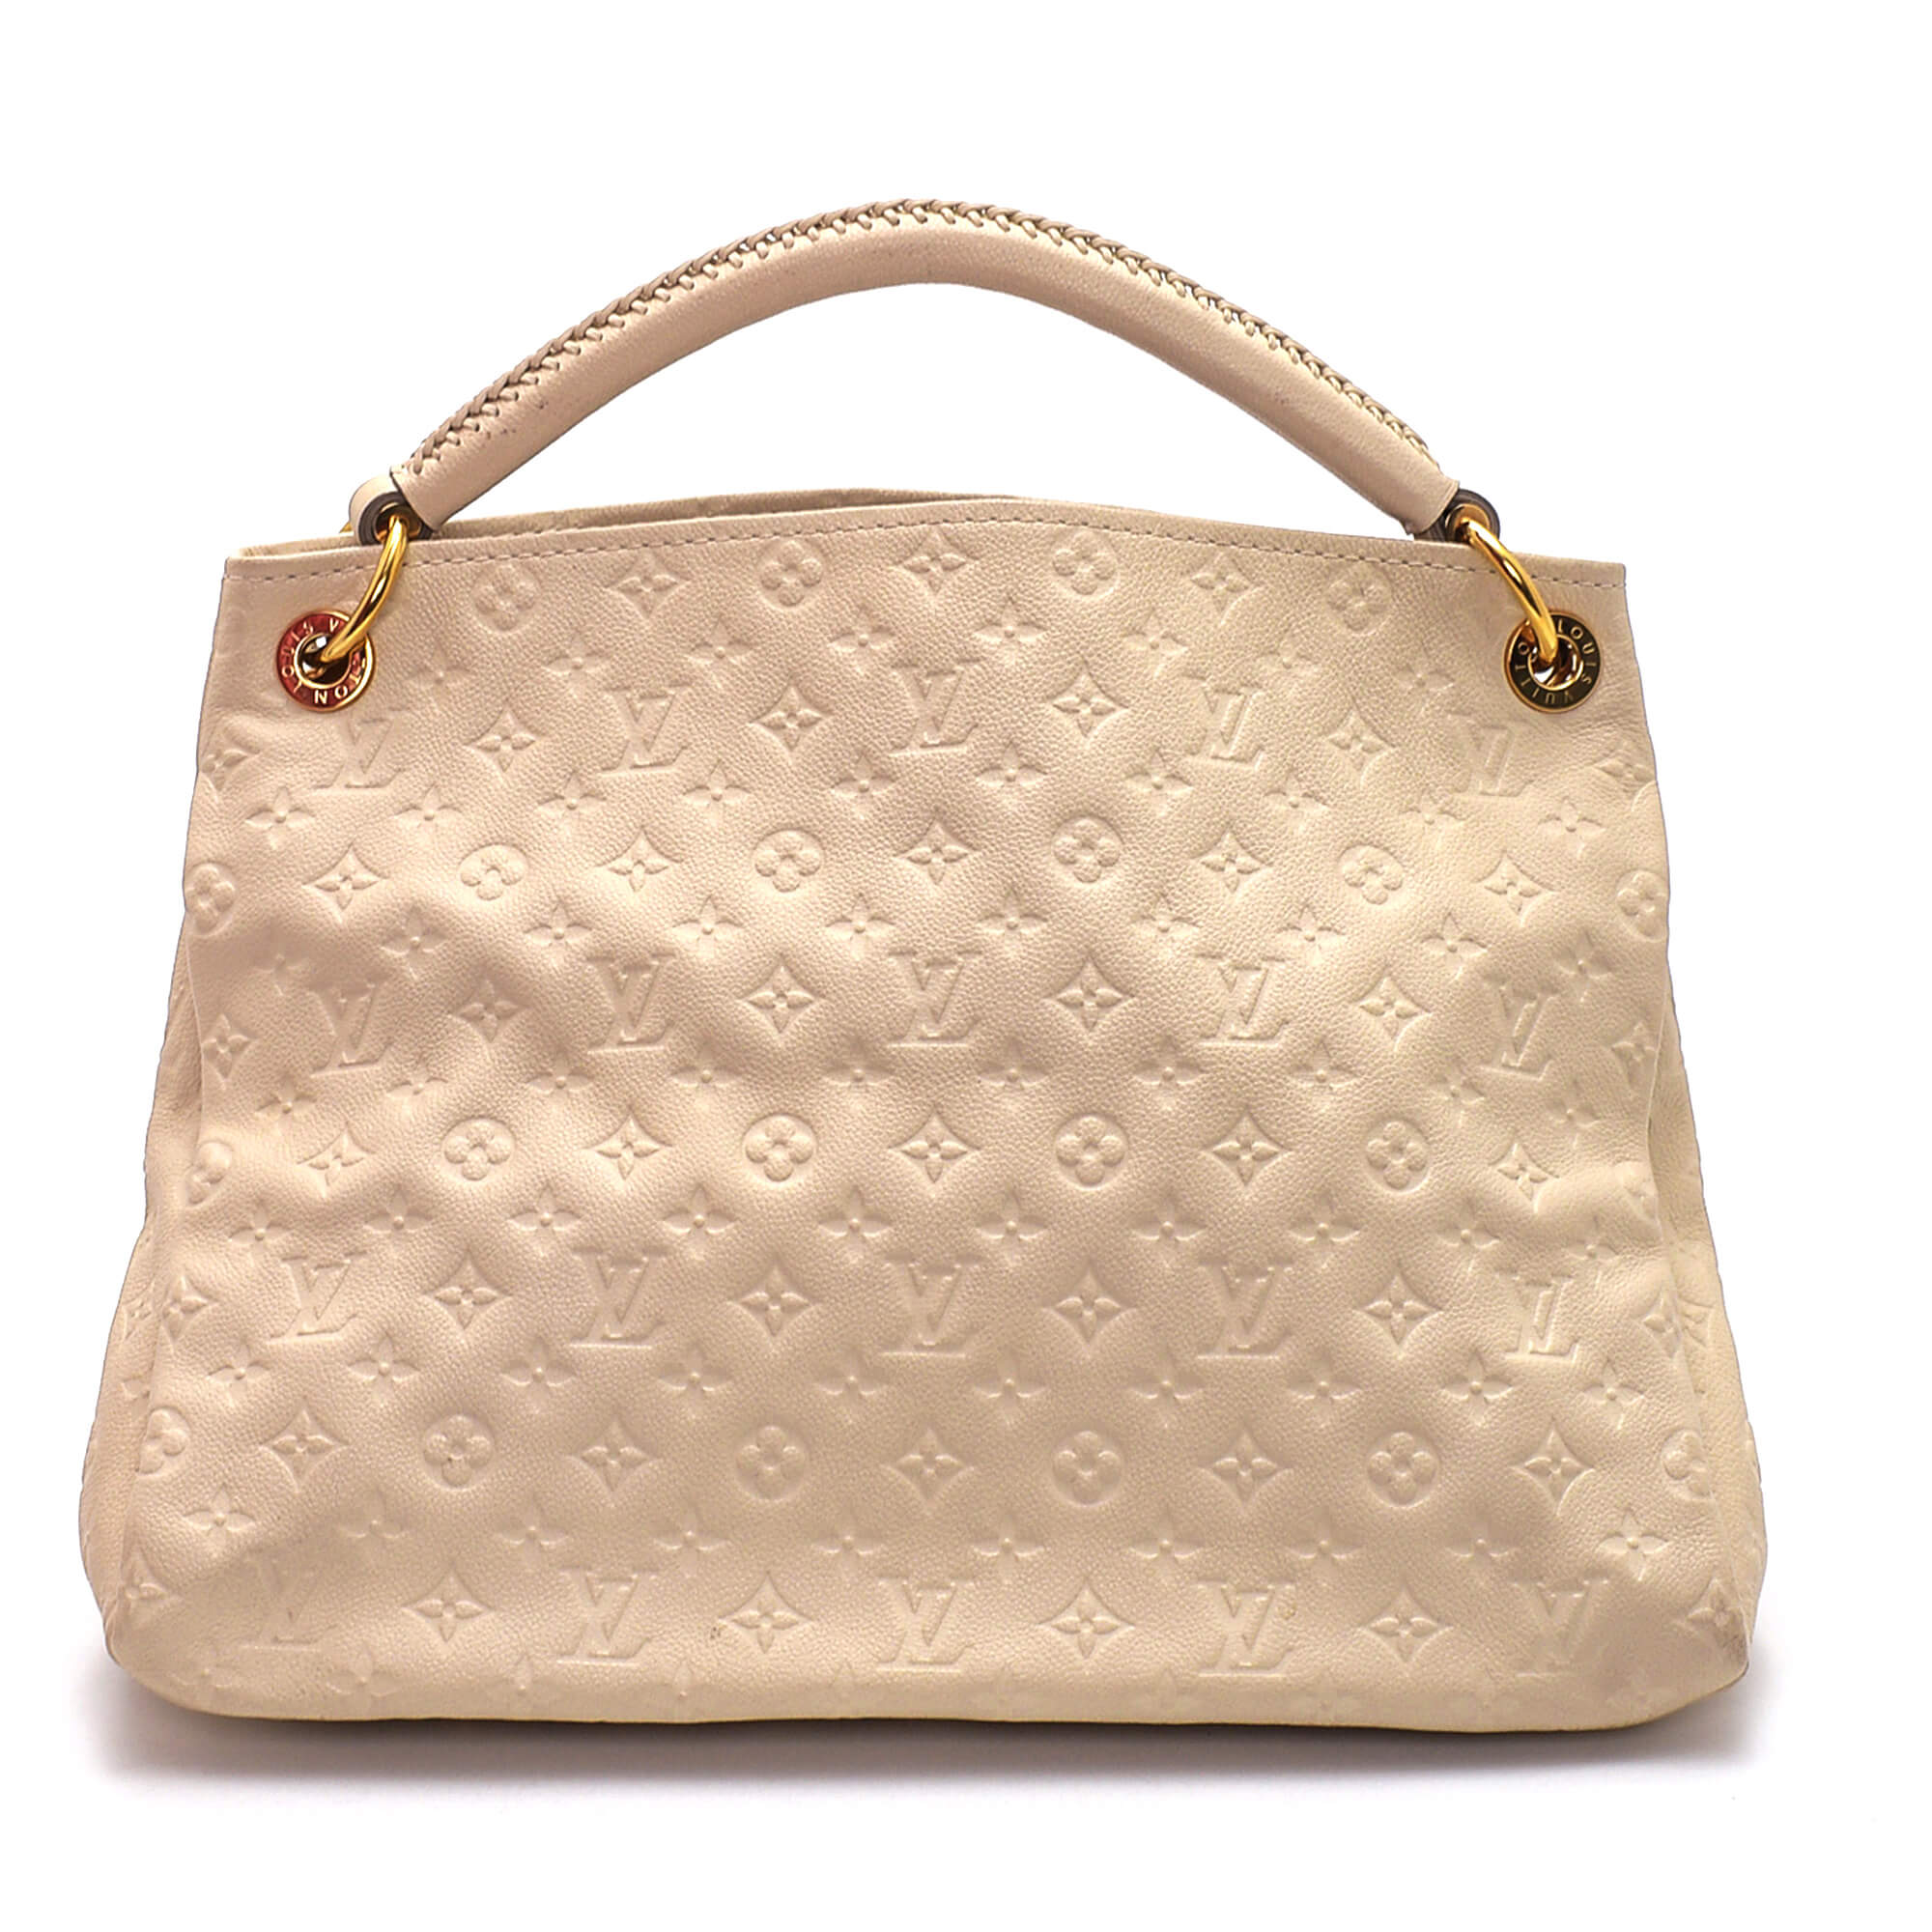 Louis Vuitton - Cream Empreinte Artsy MM Bag 